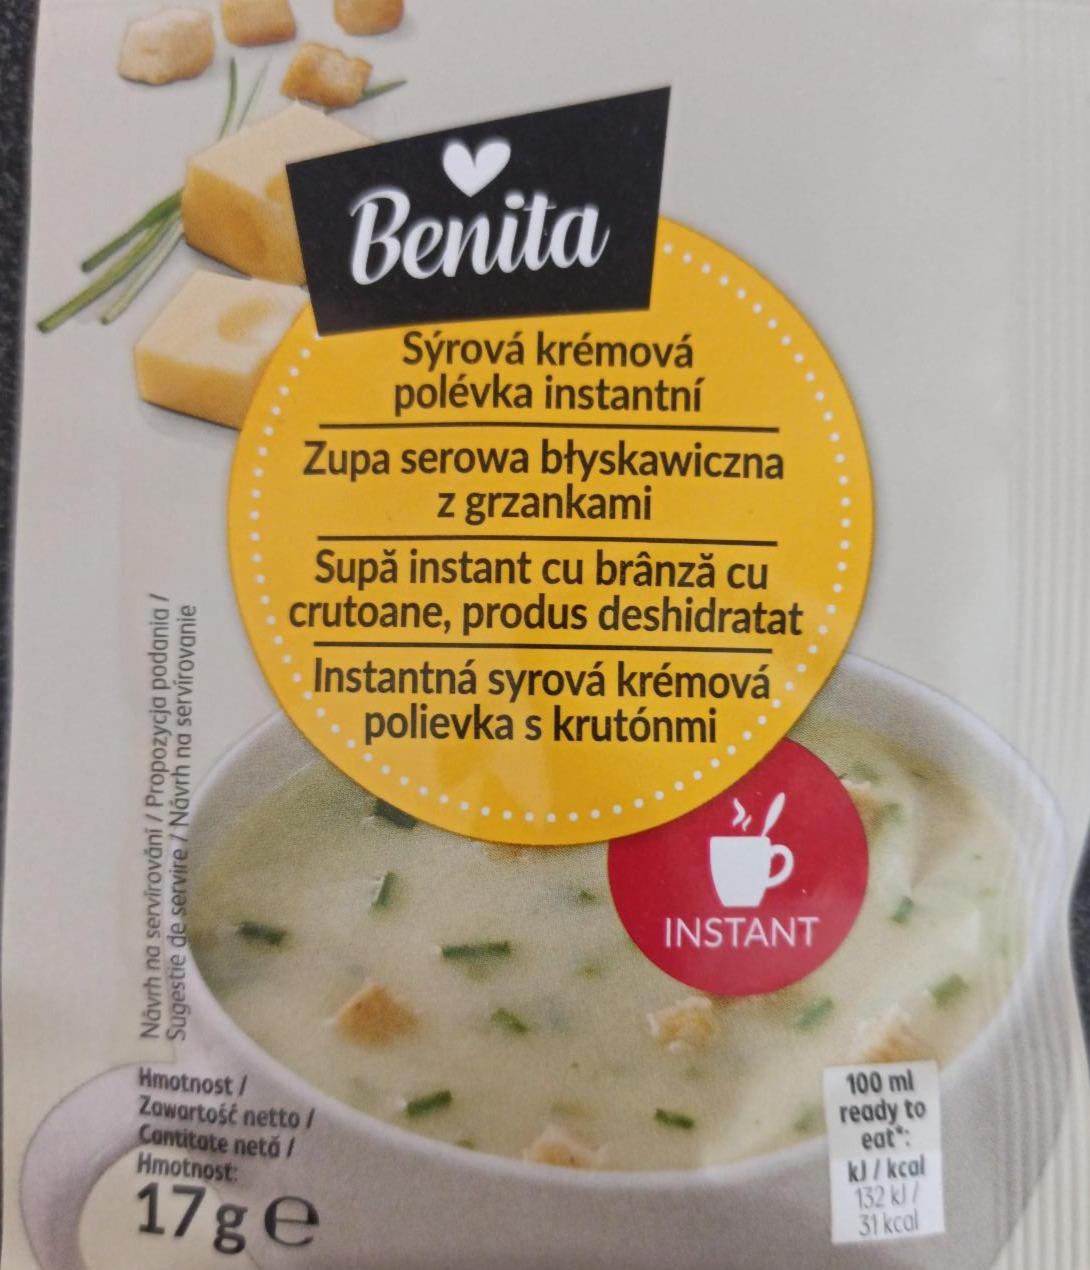 Fotografie - Sýrová krémová polévka instantní Benita